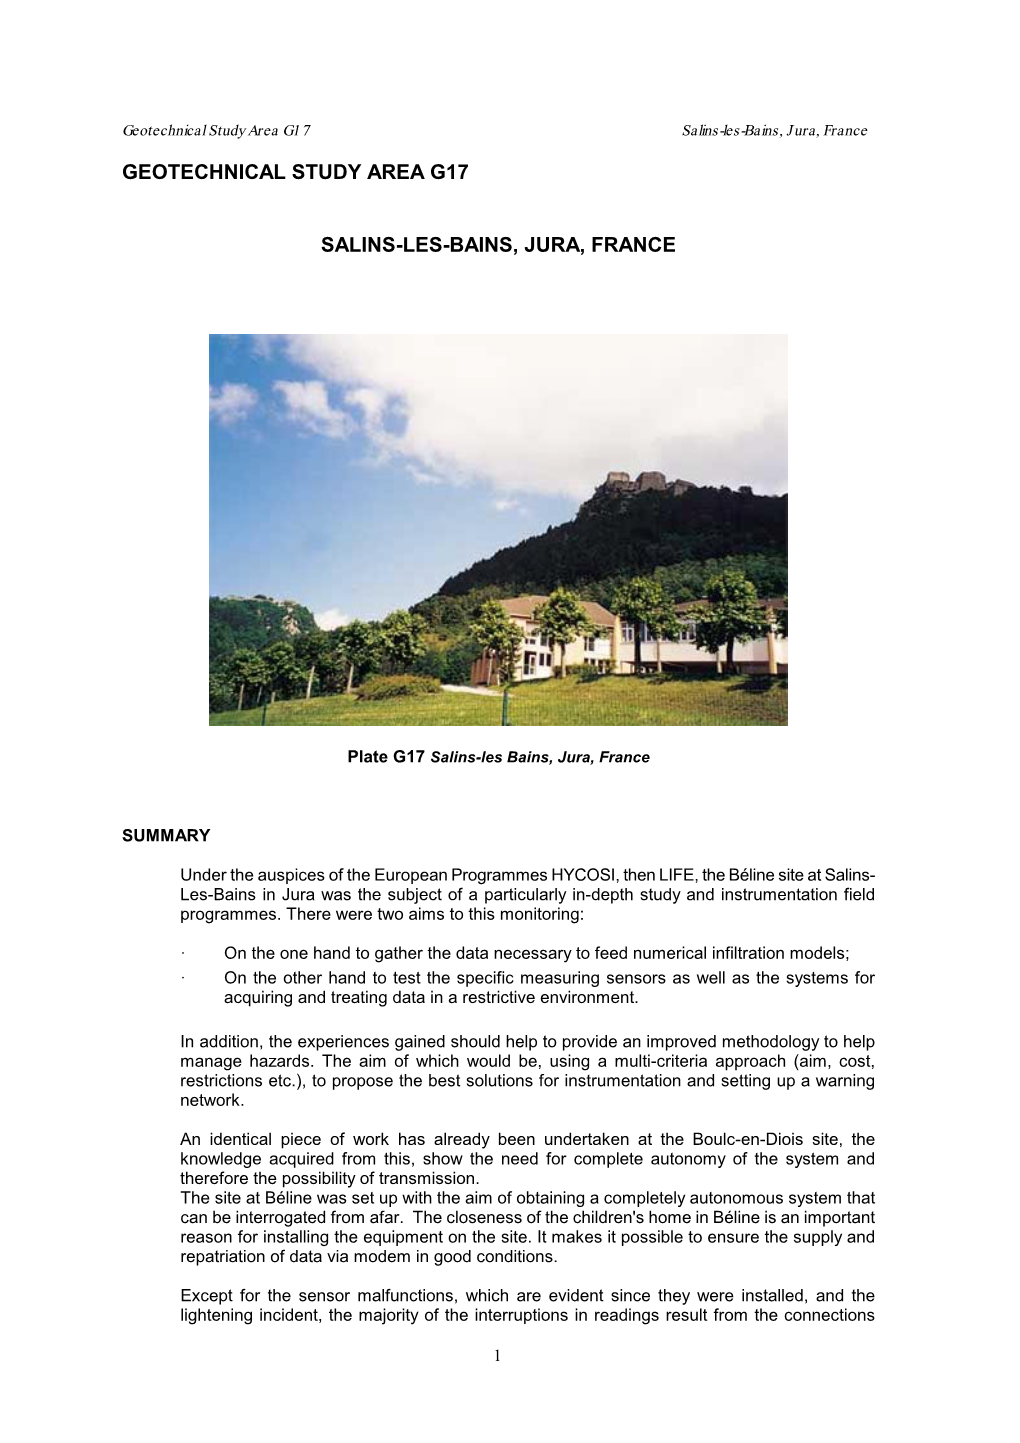 Geotechnical Study Area G17 Salins-Les-Bains, Jura, France